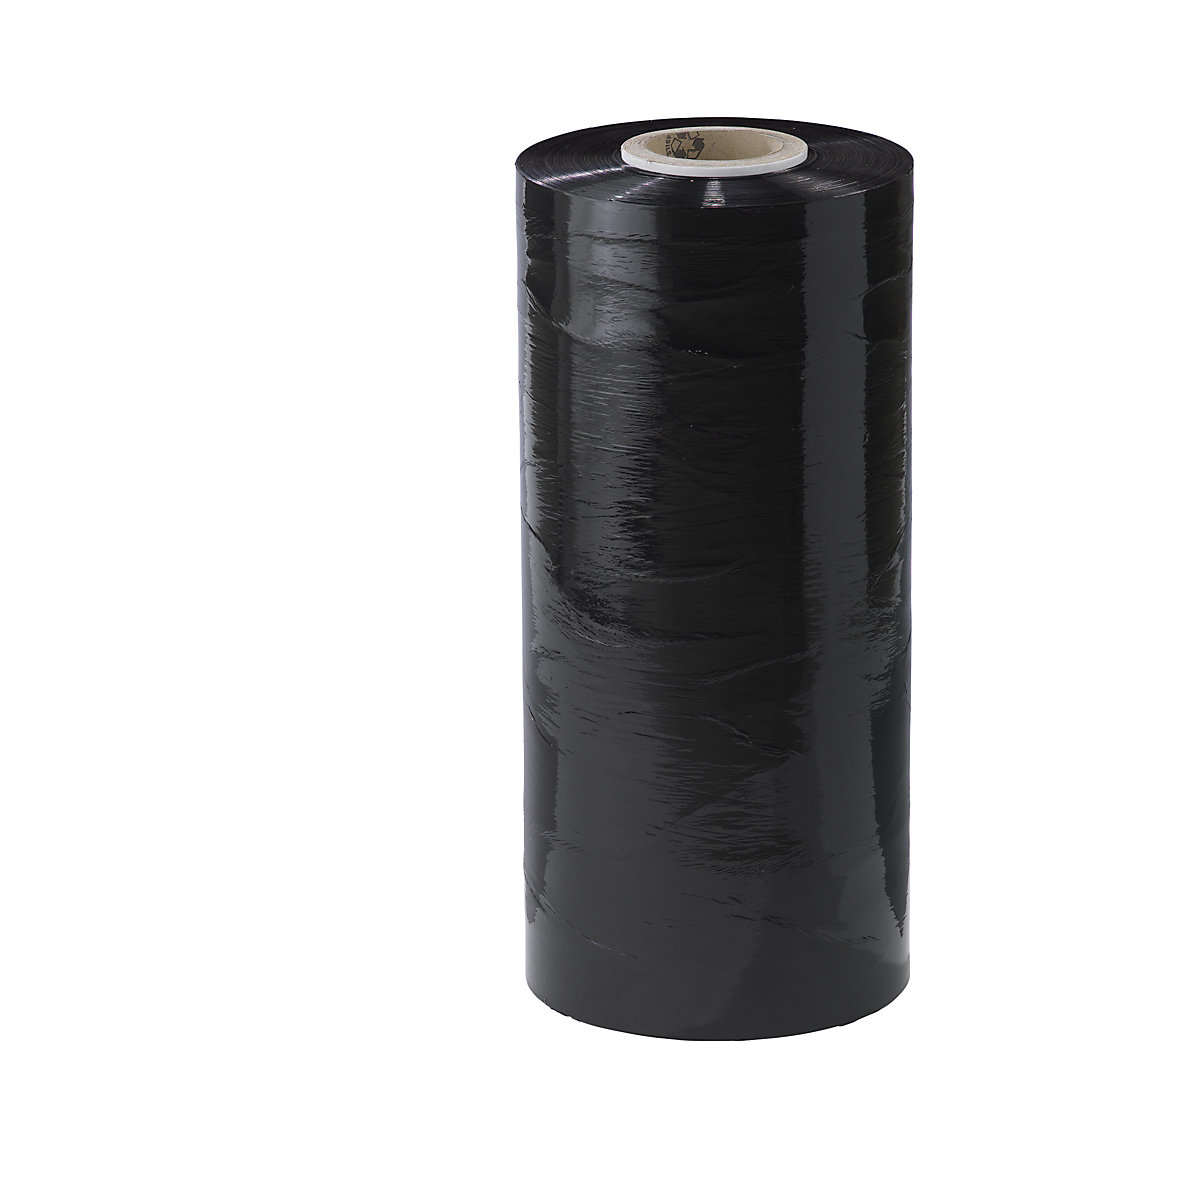 Film estirable de PE para máquinas, anchura 500 mm, a partir de 2 UE, grosor de lámina 23 µm, UE 45 unid., en negro-6